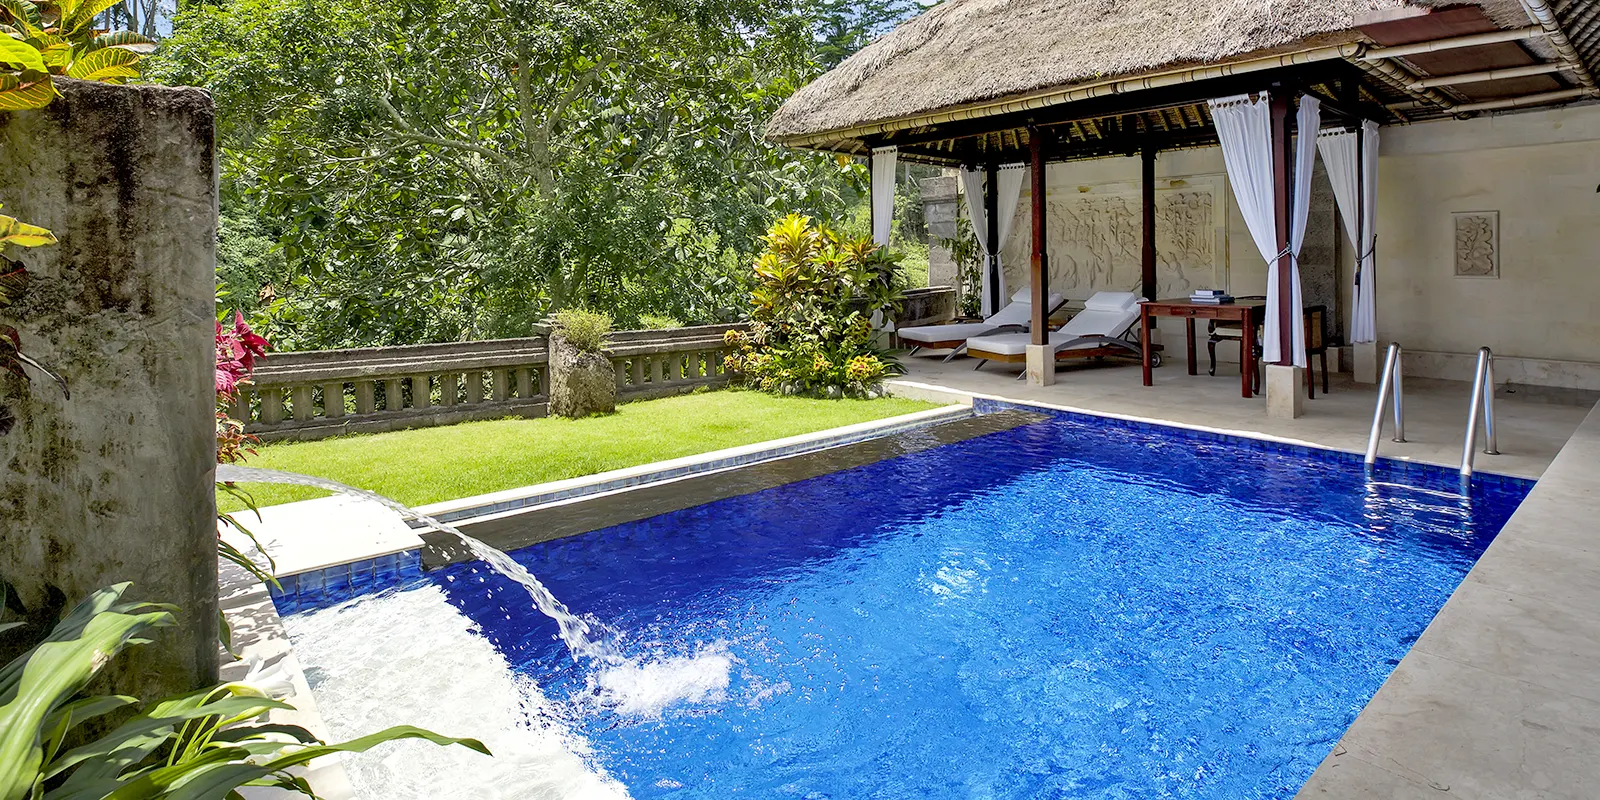 Viceroy Bali Garden Pool Villa - Pool Area